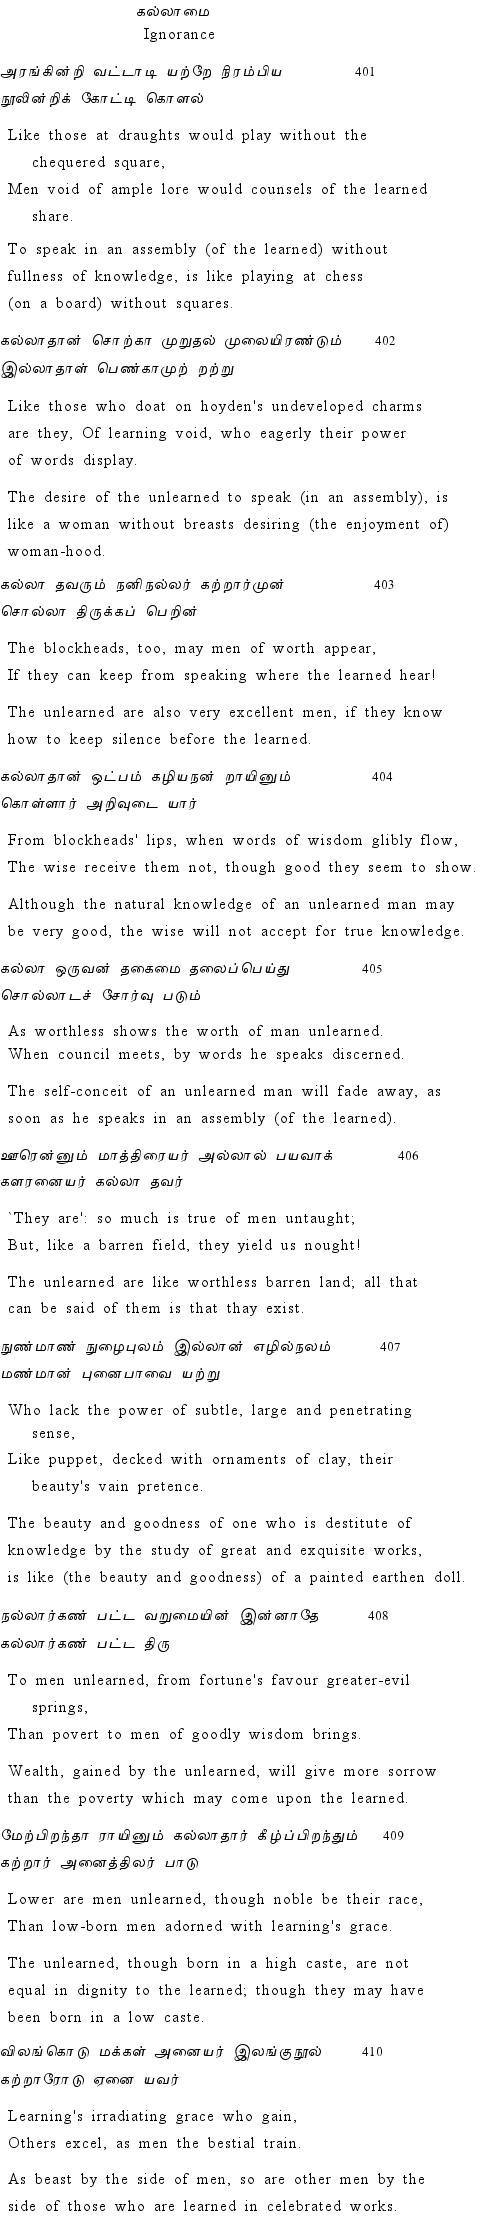 Text of Adhikaram 41